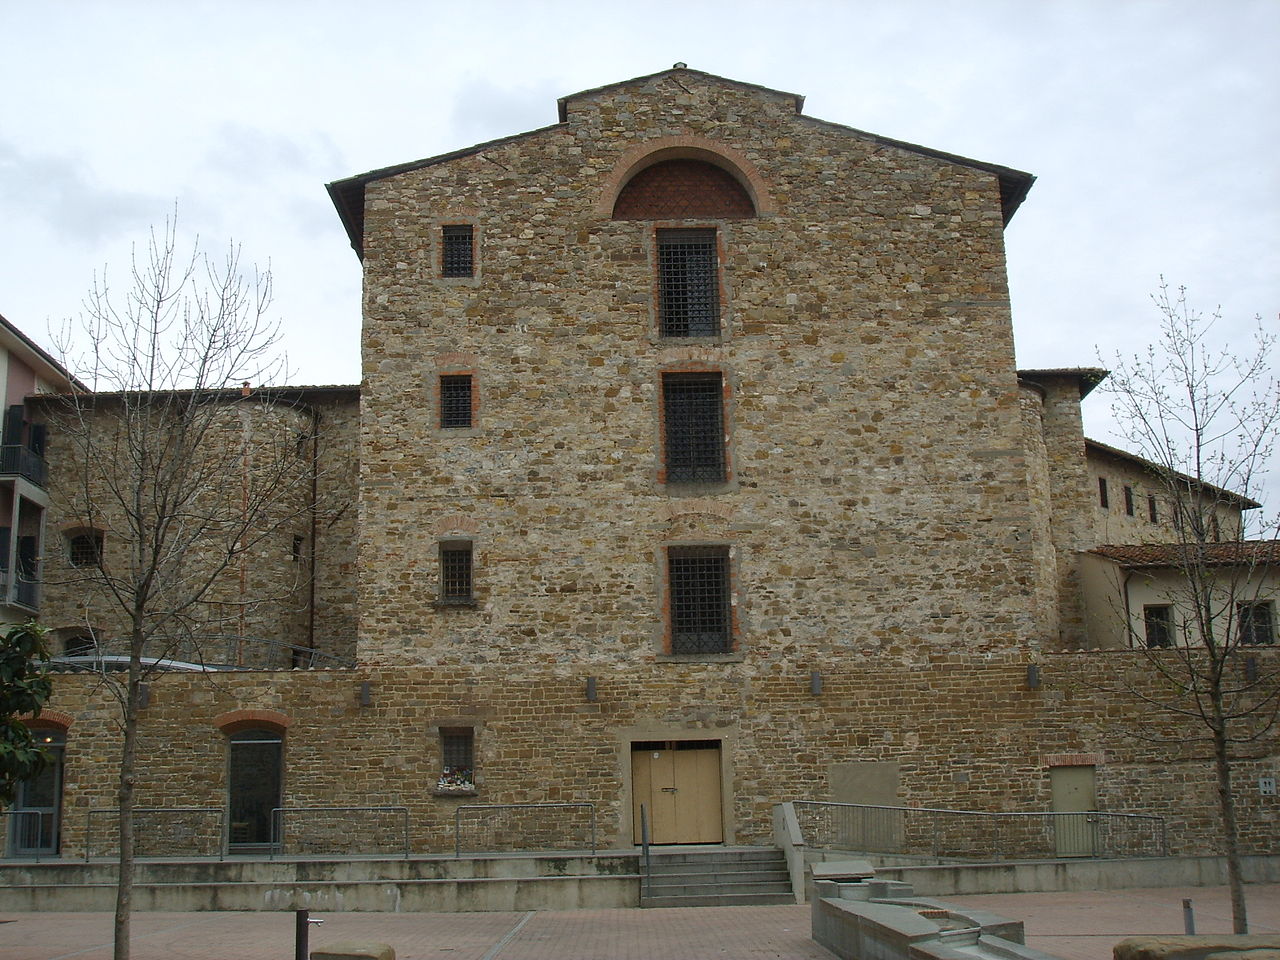 Complesso delle murate, lato ovest del panopticon carcerario (Le Murate, Firenze)